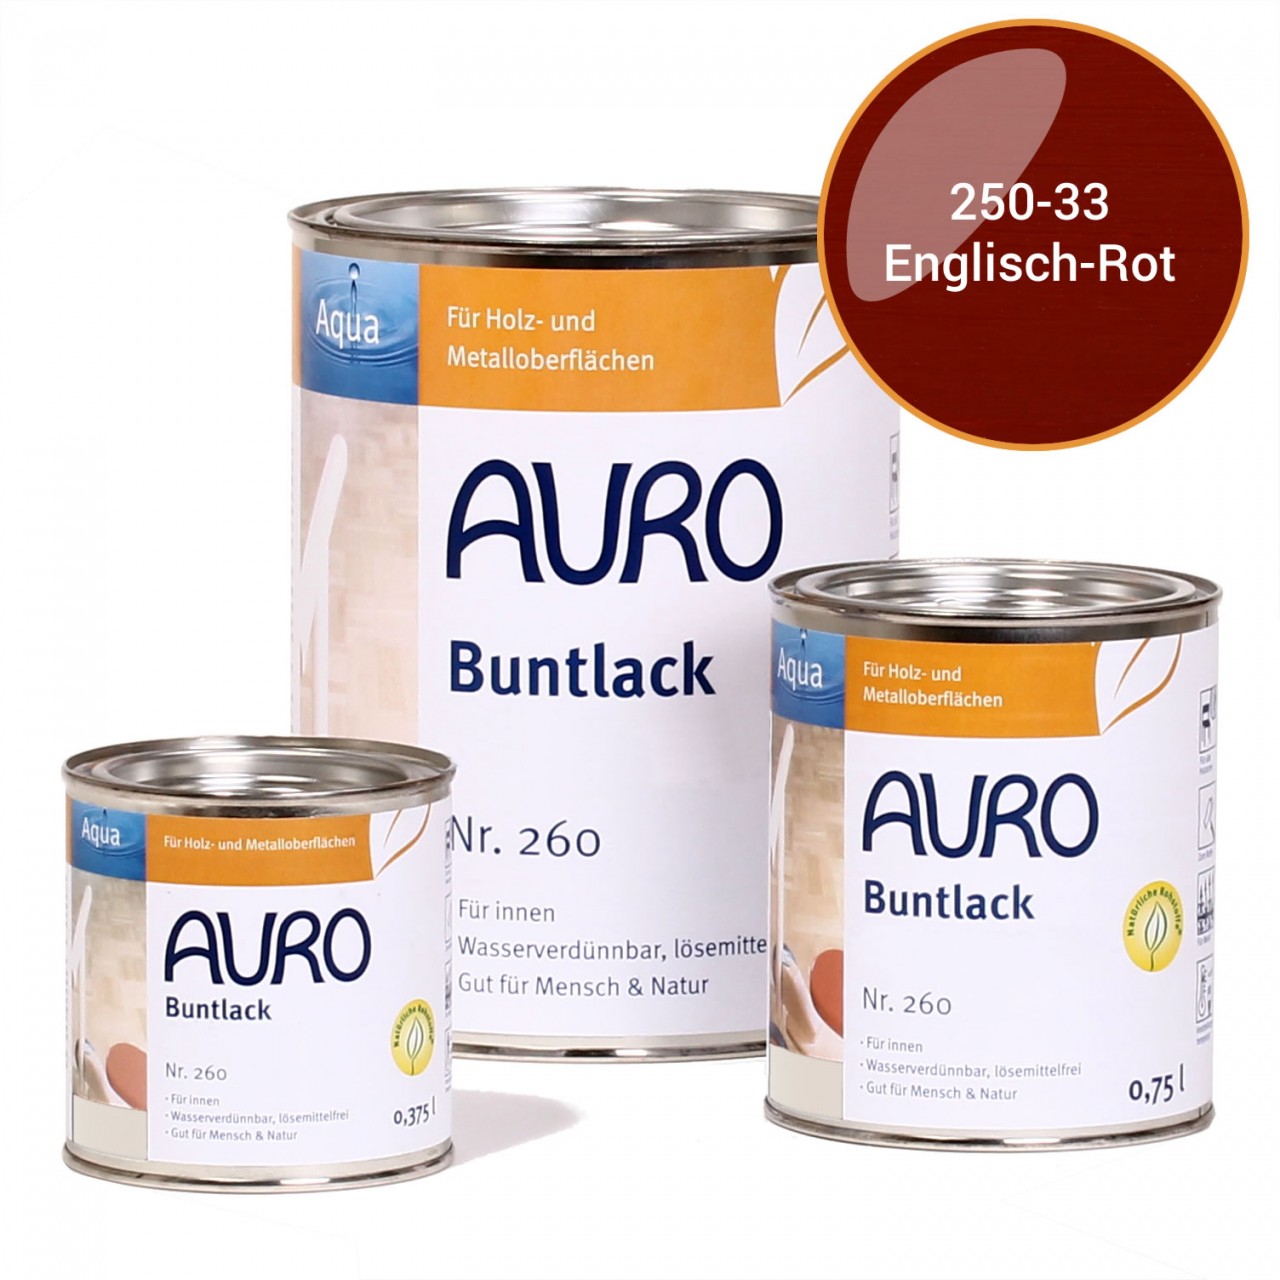 AURO Buntlack glnzend Nr.250-33-Englisch-Rot